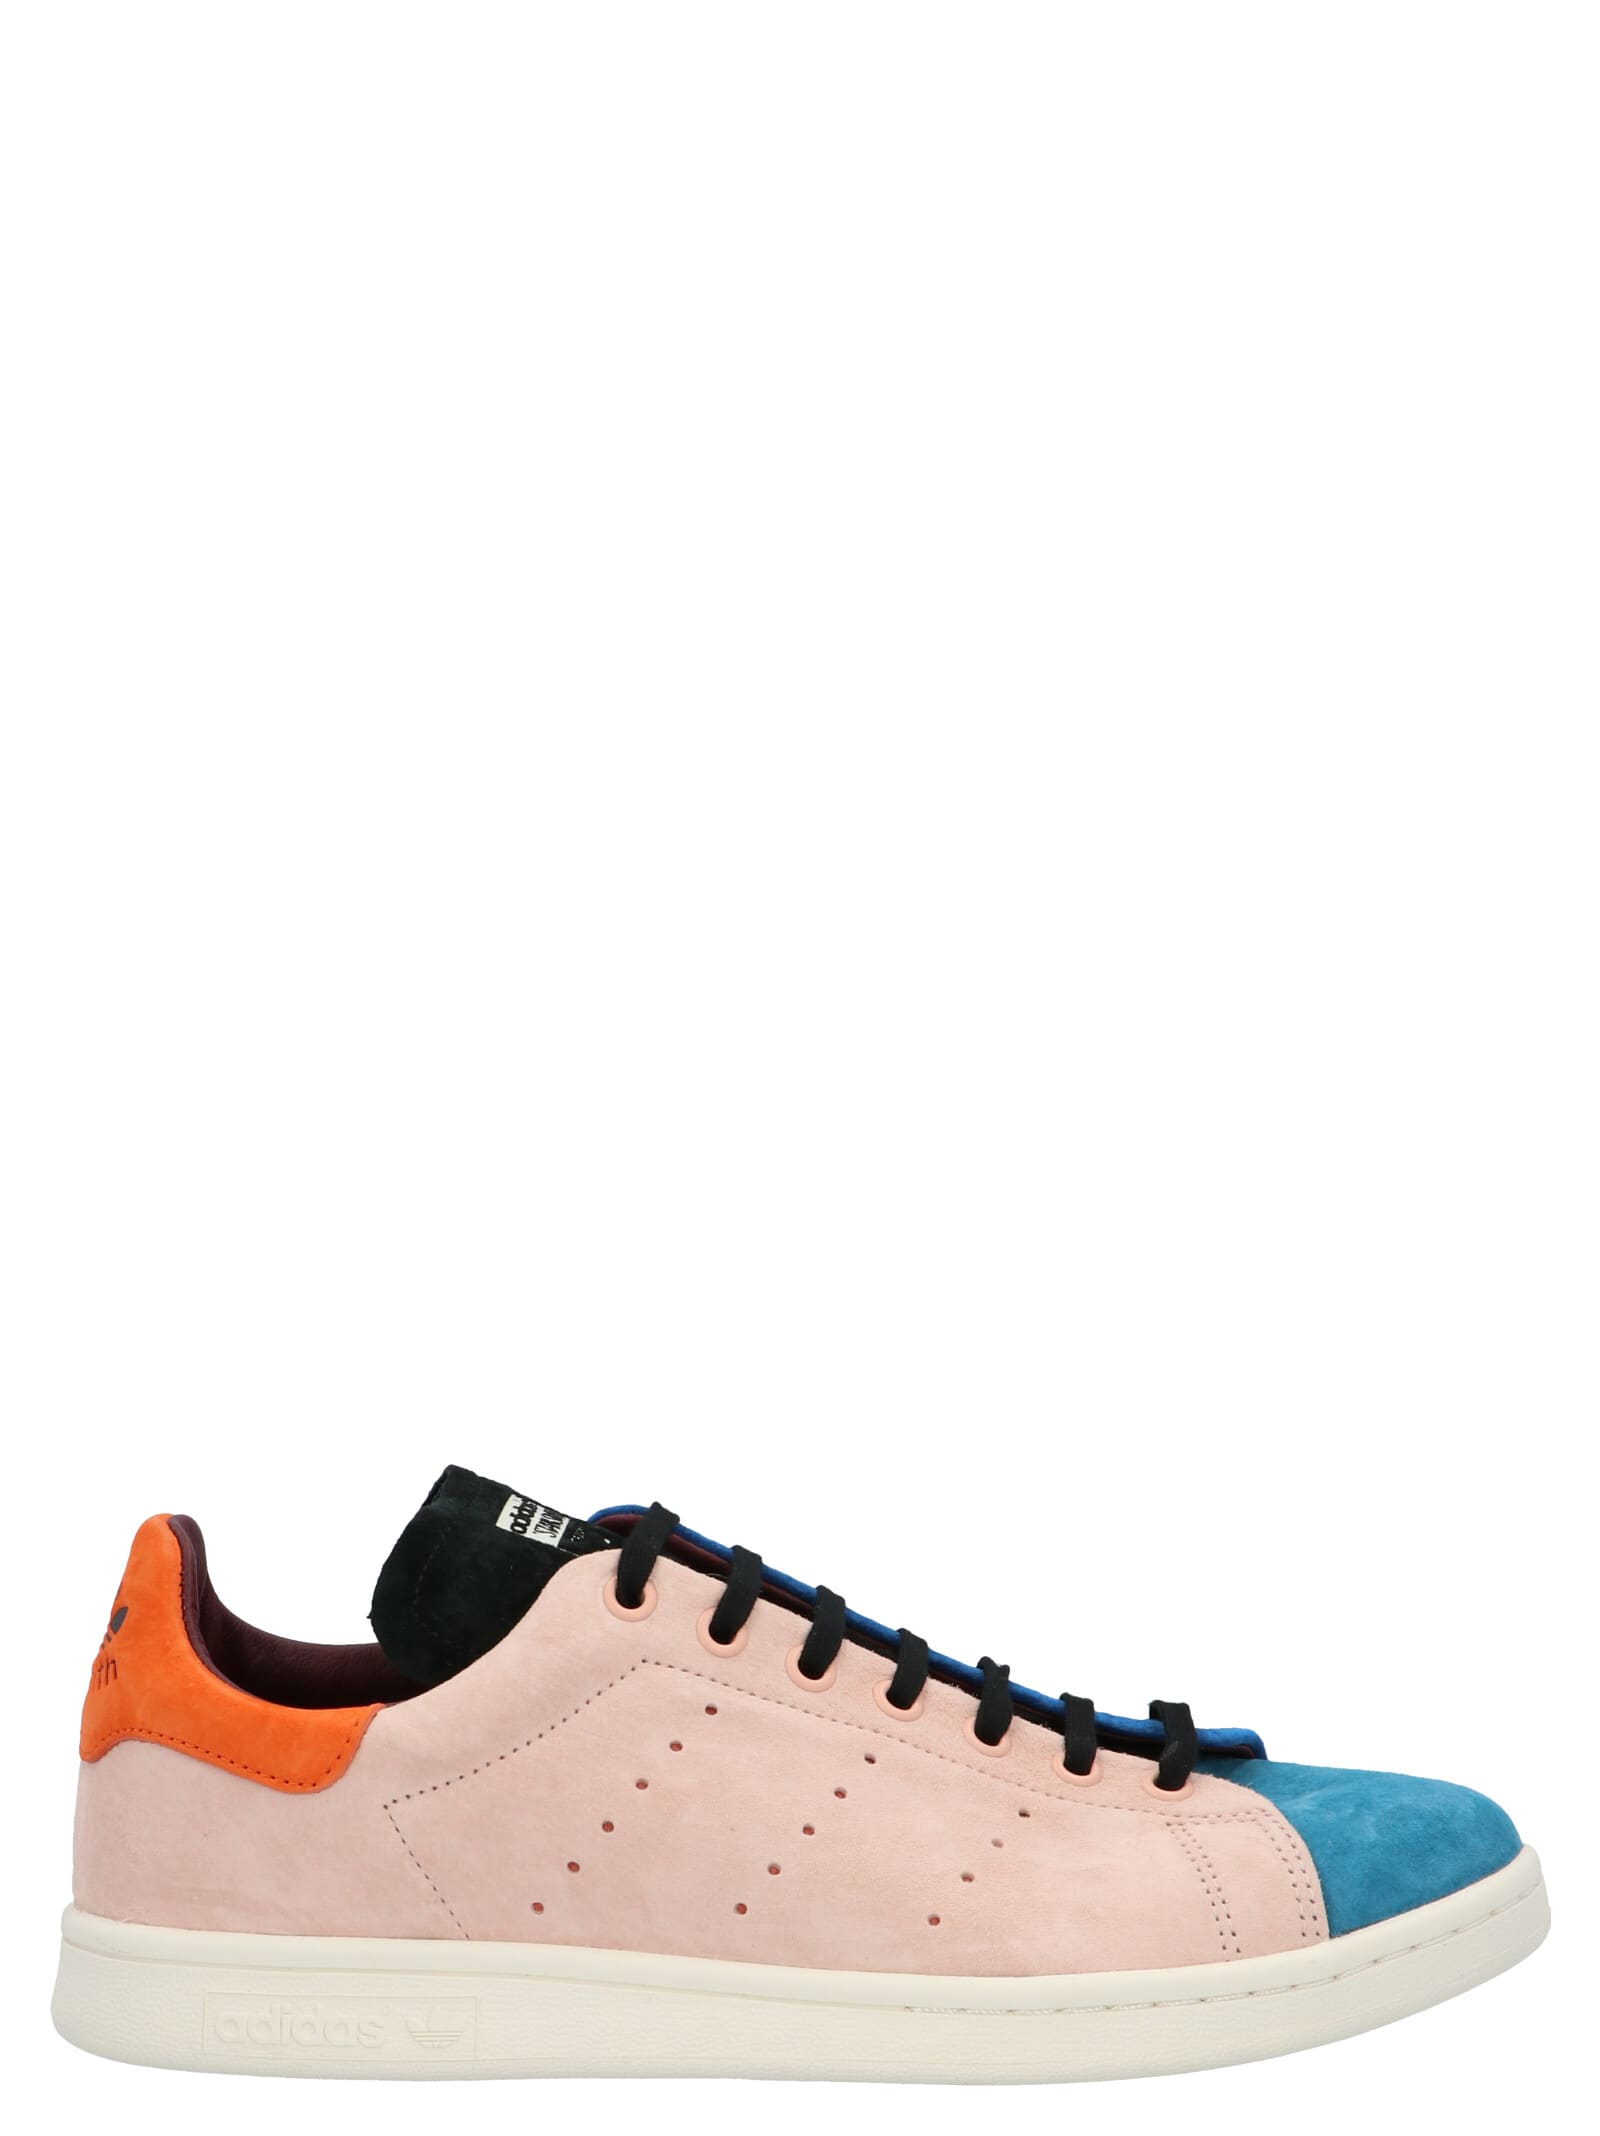 Adidas Originals Stan Smith Recon Shoes Italist